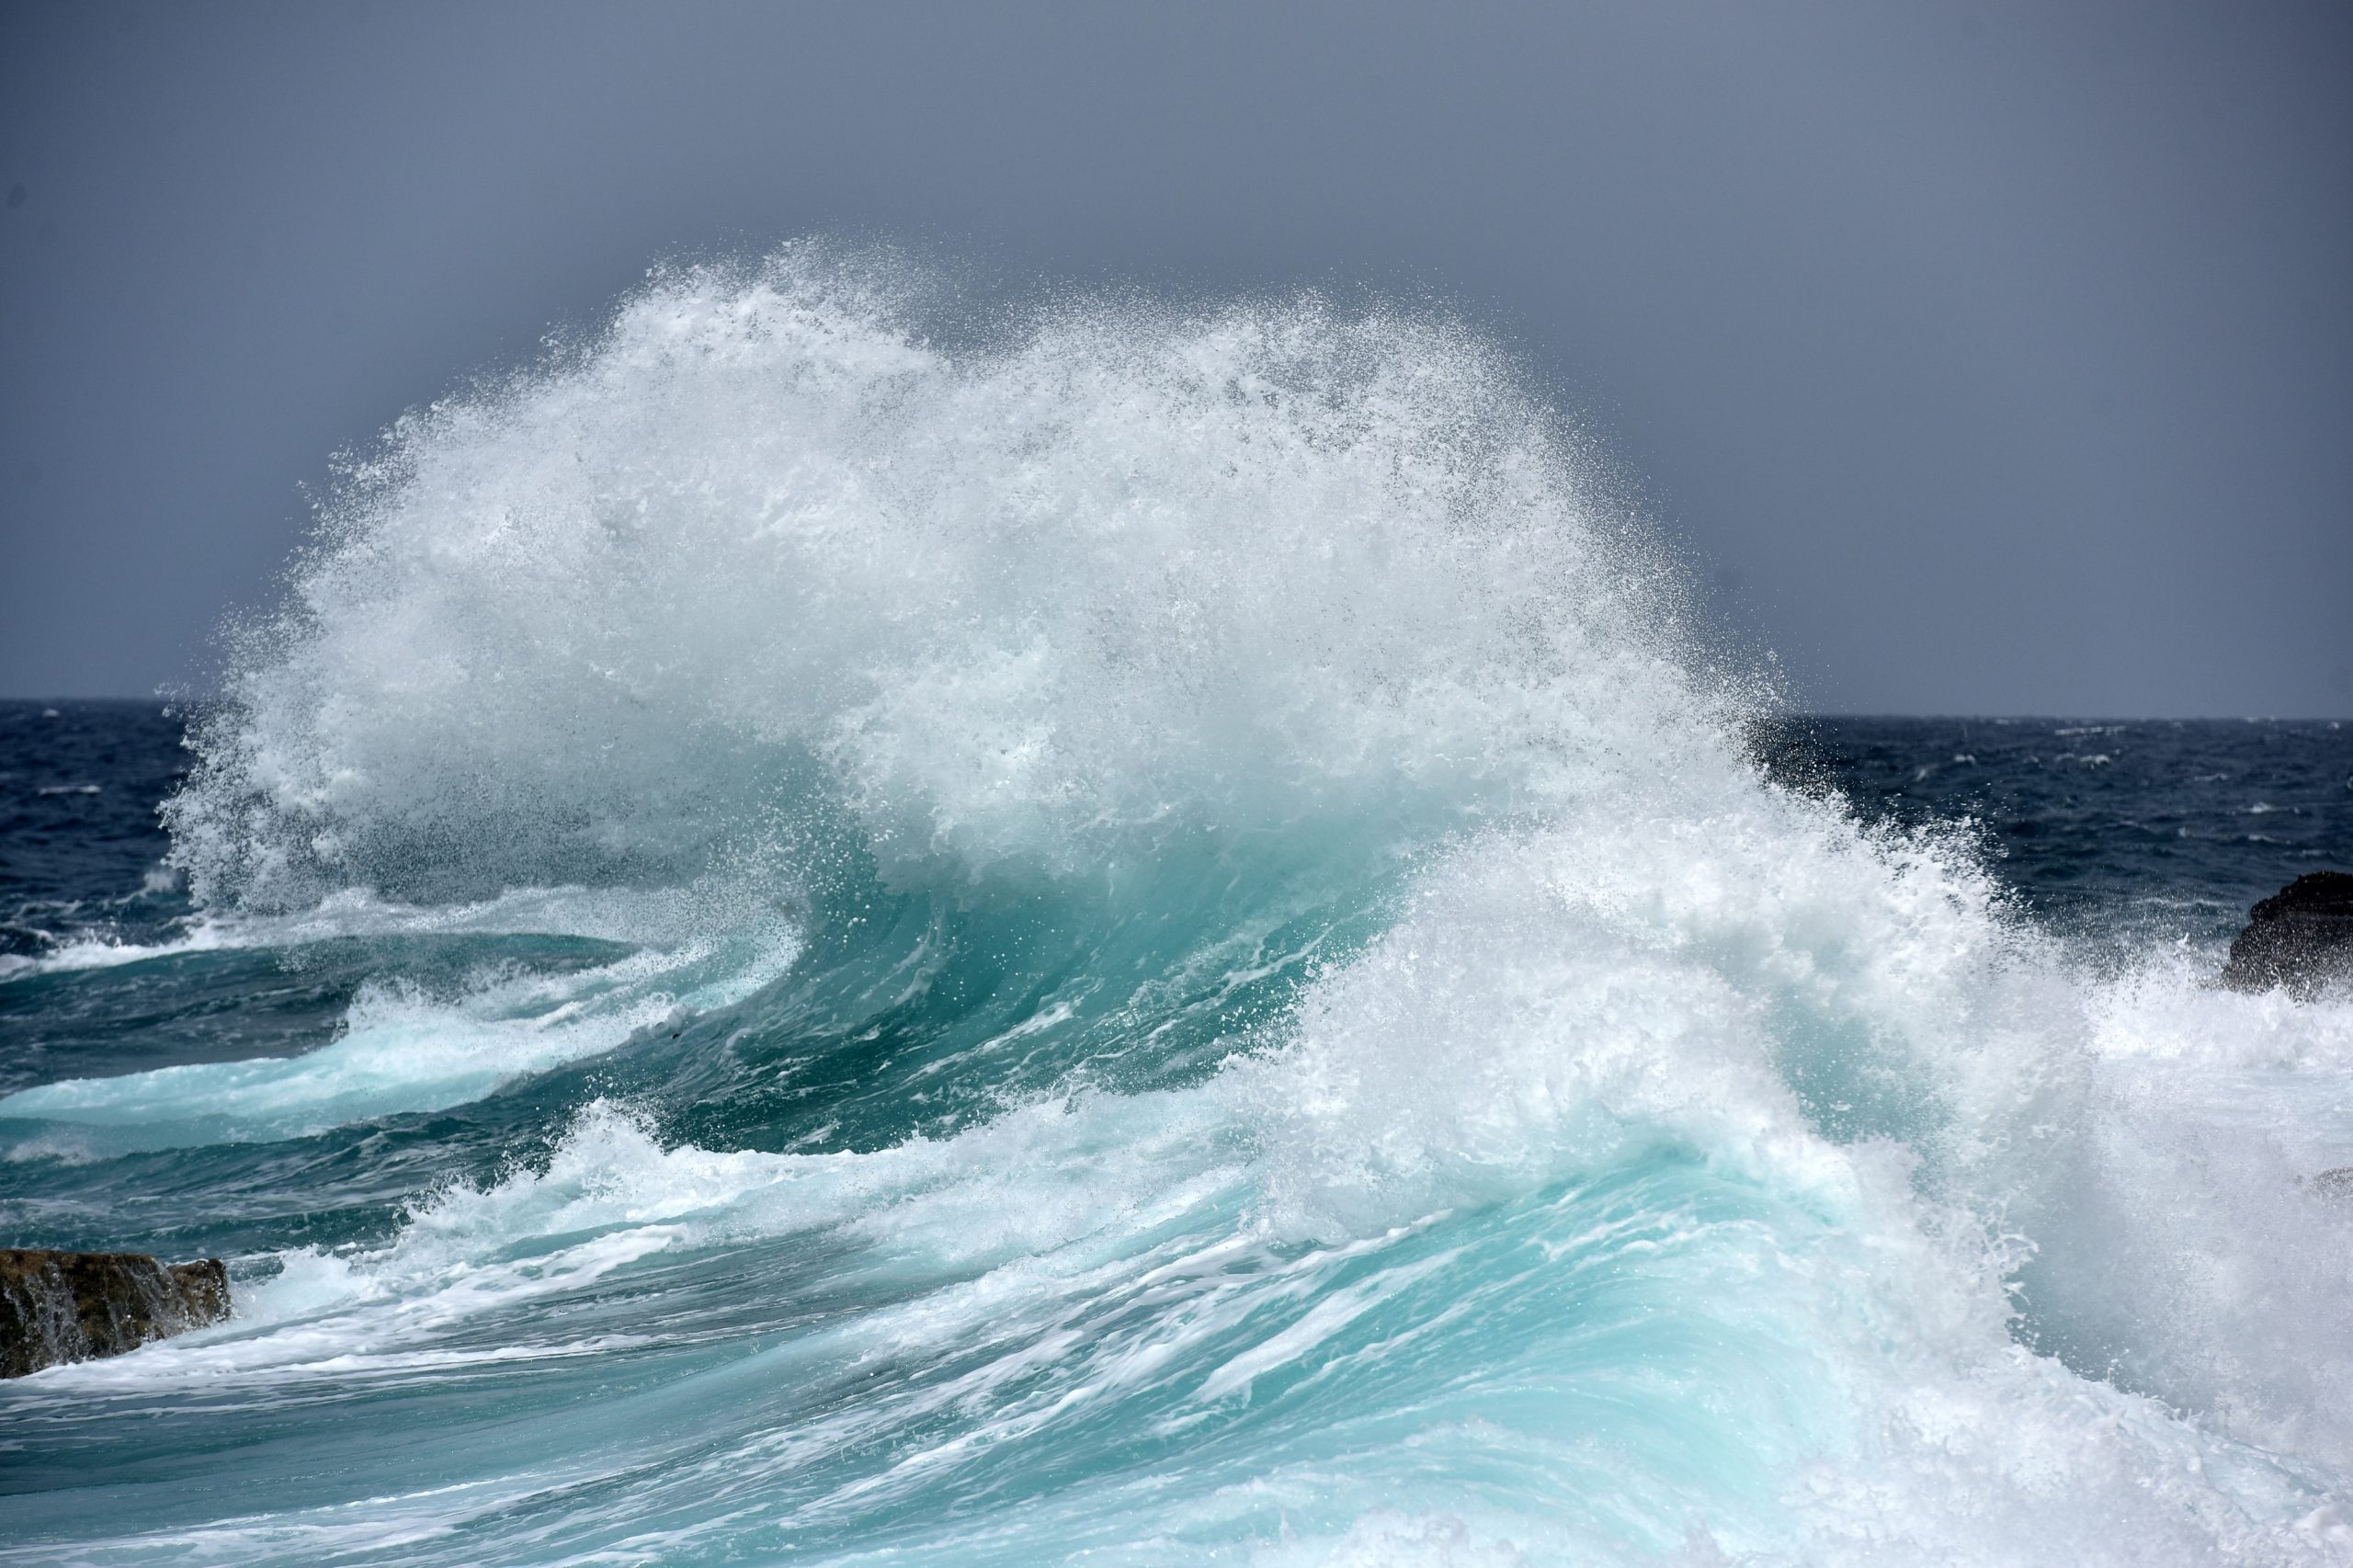 16.06.2016., Pula - Jako jugo u pulskom akvatoriju, veliki valovi svojom snagom plijenili pozornost.
Photo: Dusko Marusic/PIXSELL